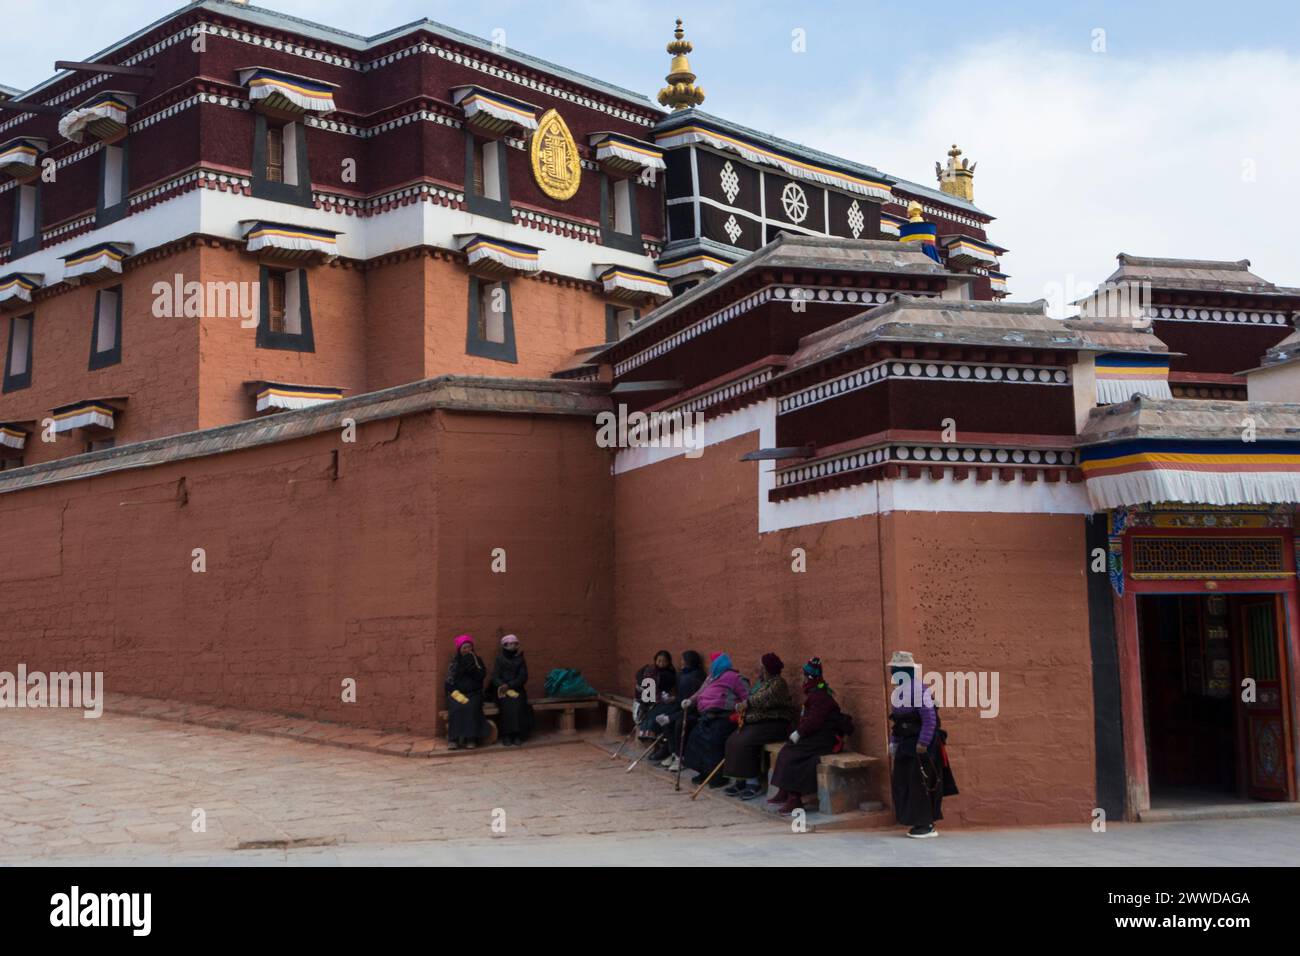 Pellegrini che si riposano su una panchina accanto a uno dei templi del monastero di Labrang, contea di Xiahe, prefettura autonoma tibetana di Gannan, Gansu, Cina Foto Stock